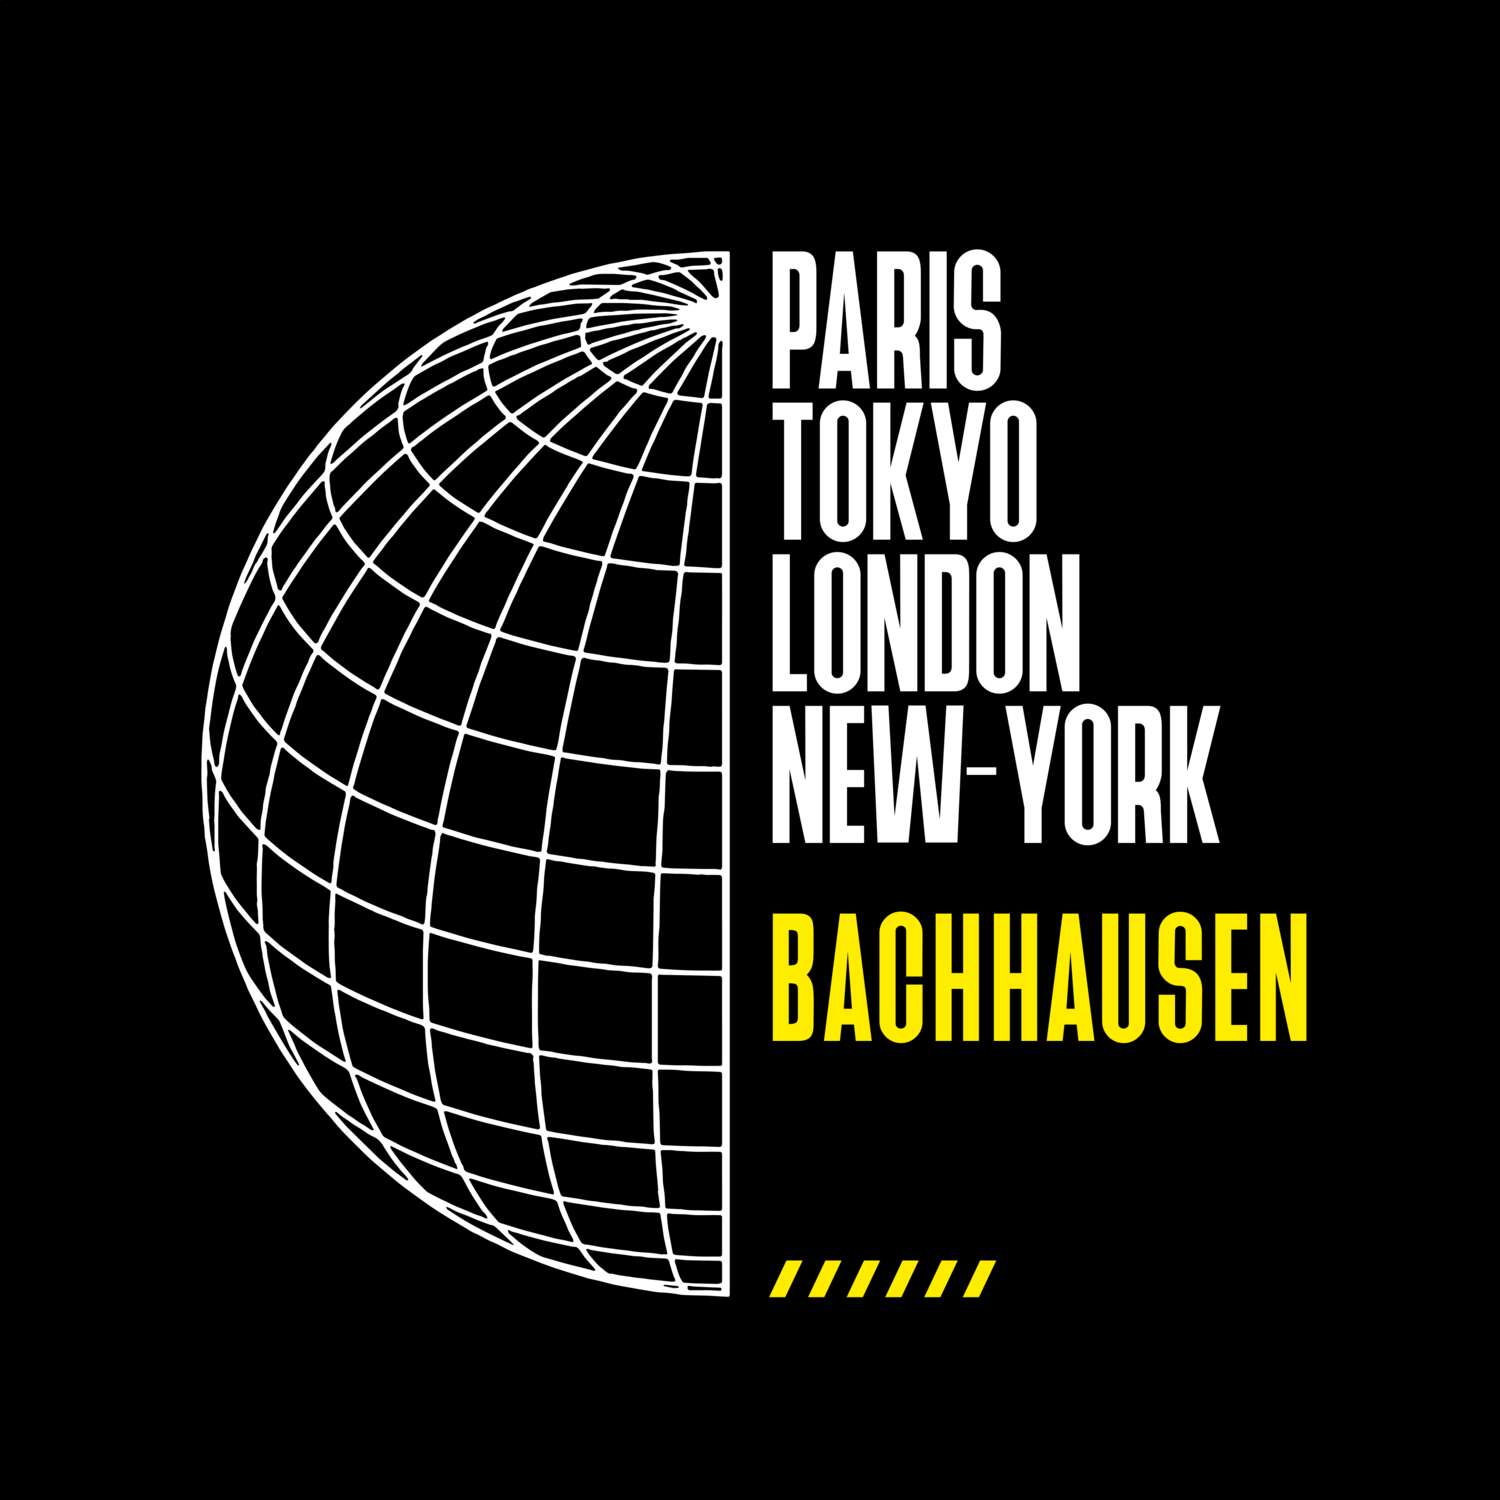 Bachhausen T-Shirt »Paris Tokyo London«